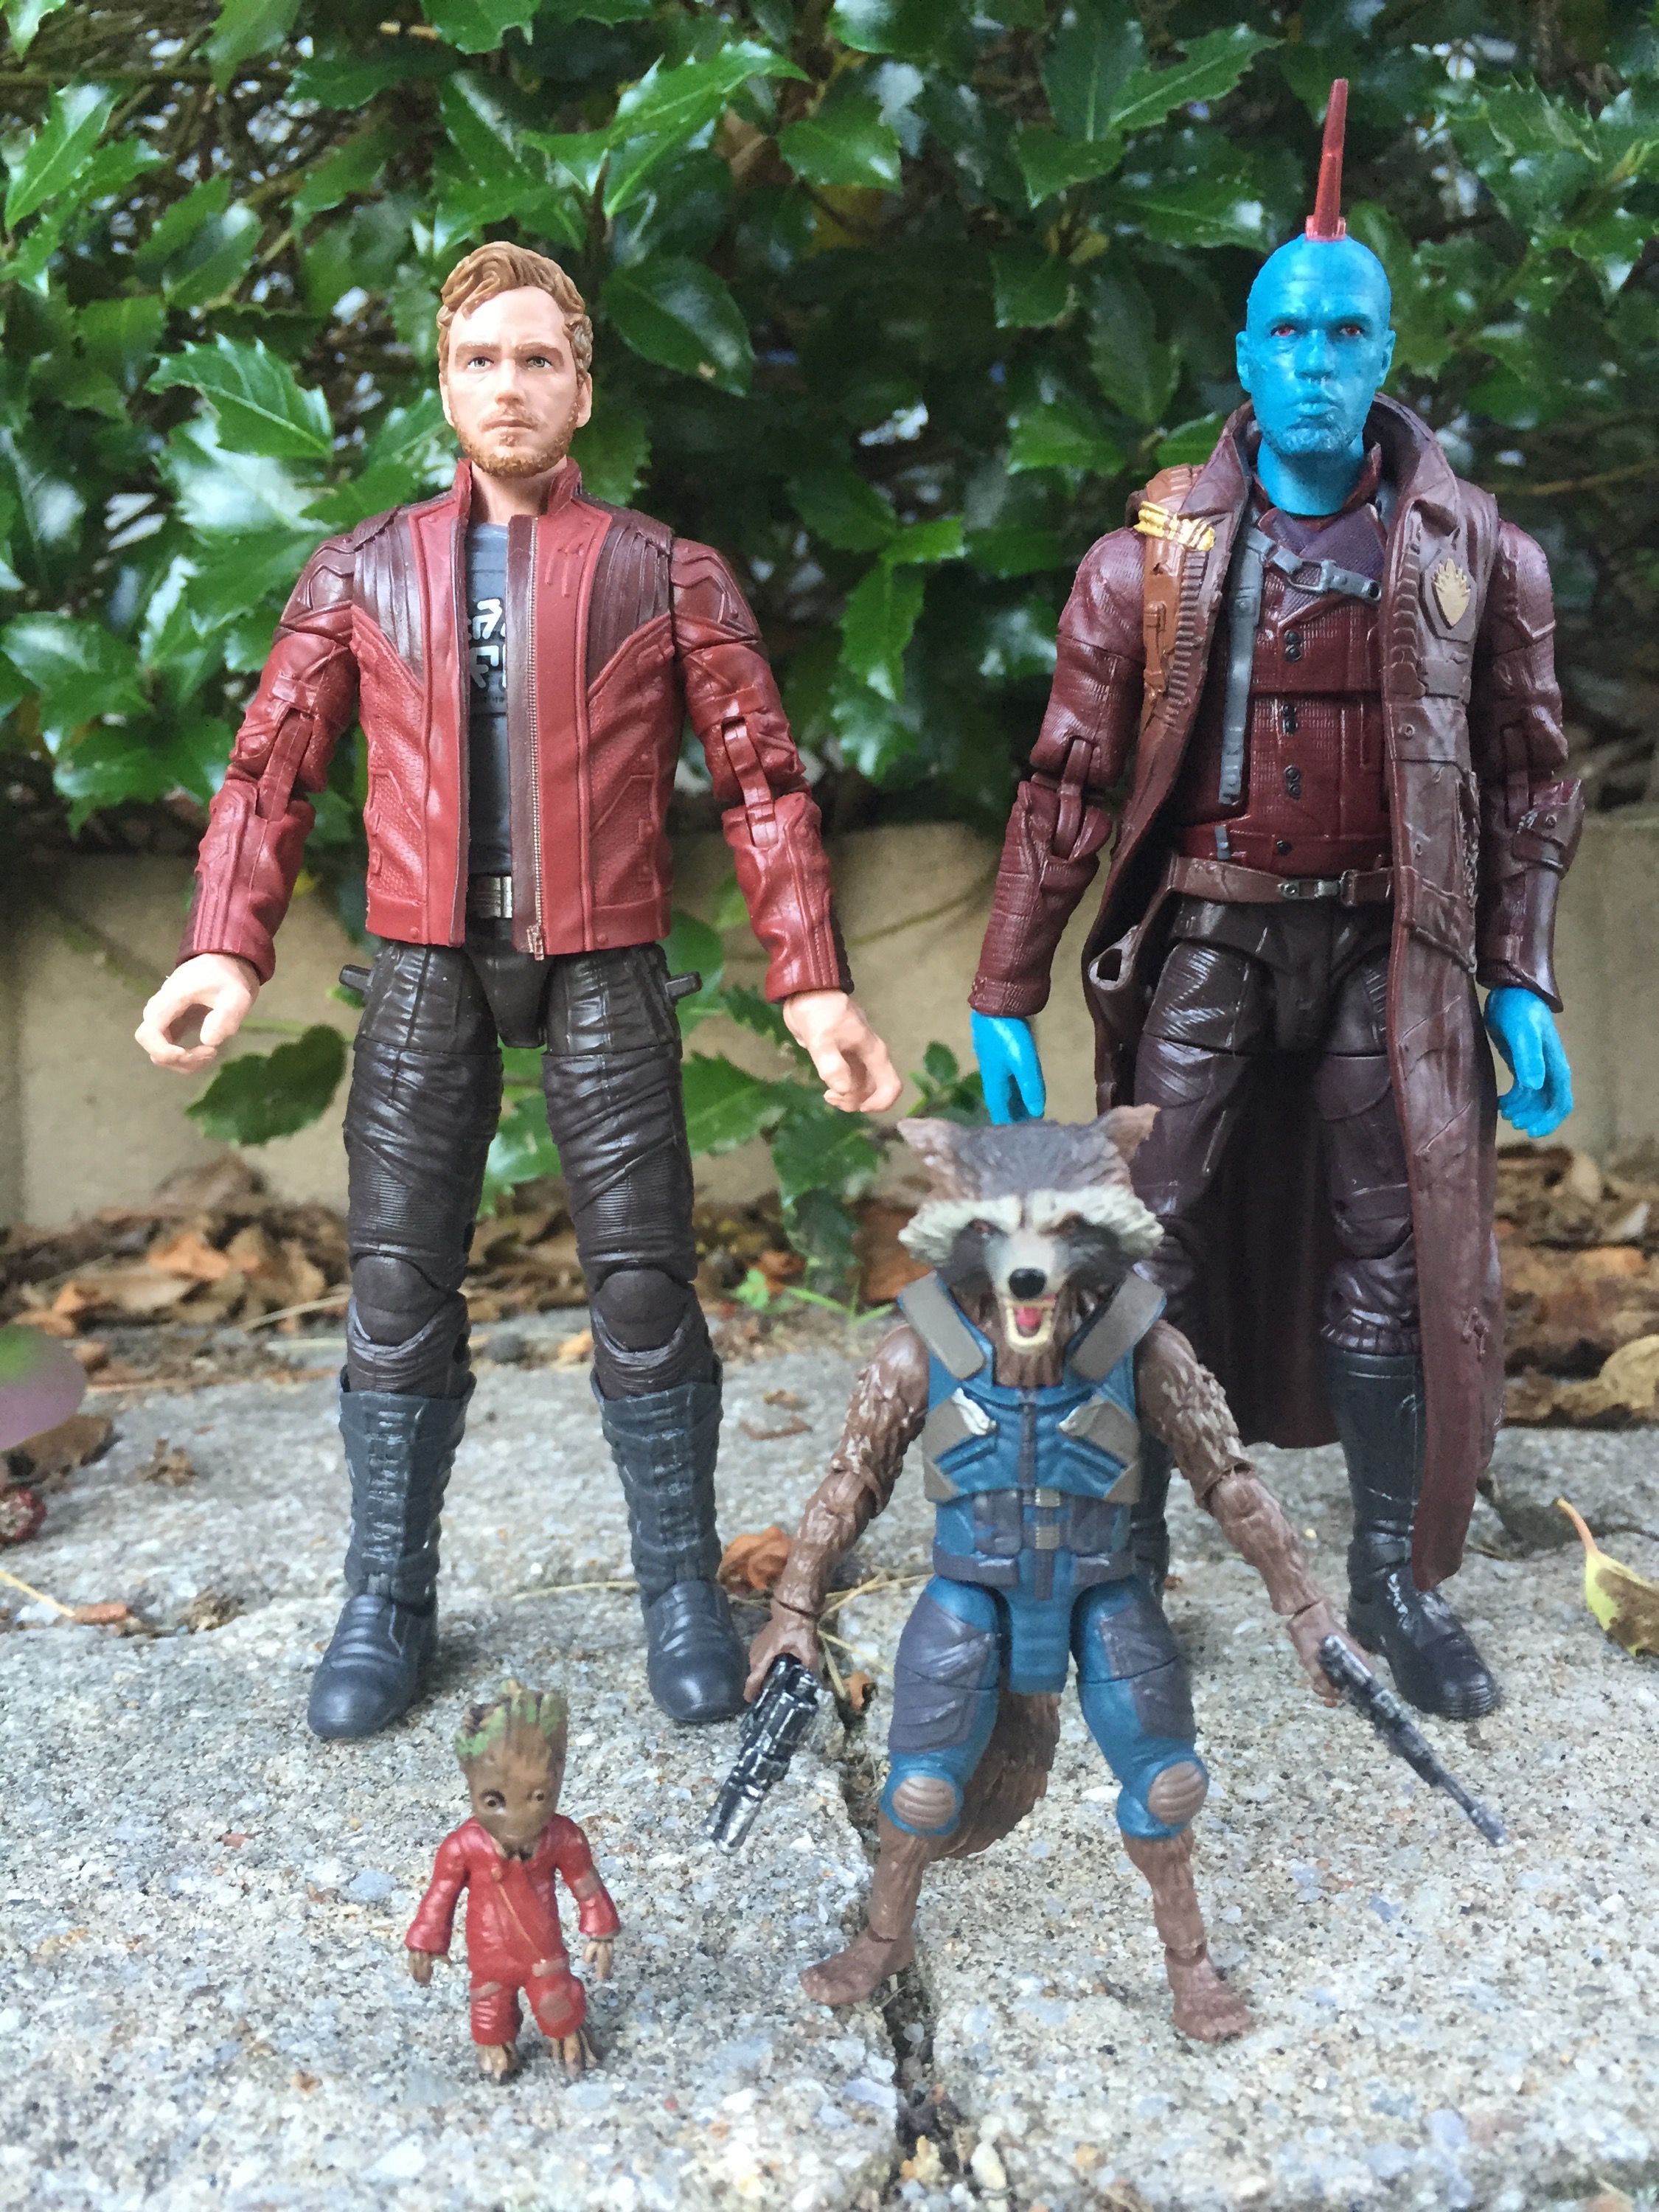 S.H.Figuarts Guardians of The Galaxy Groot Rocket Raccoon Avengers Figur Figuren